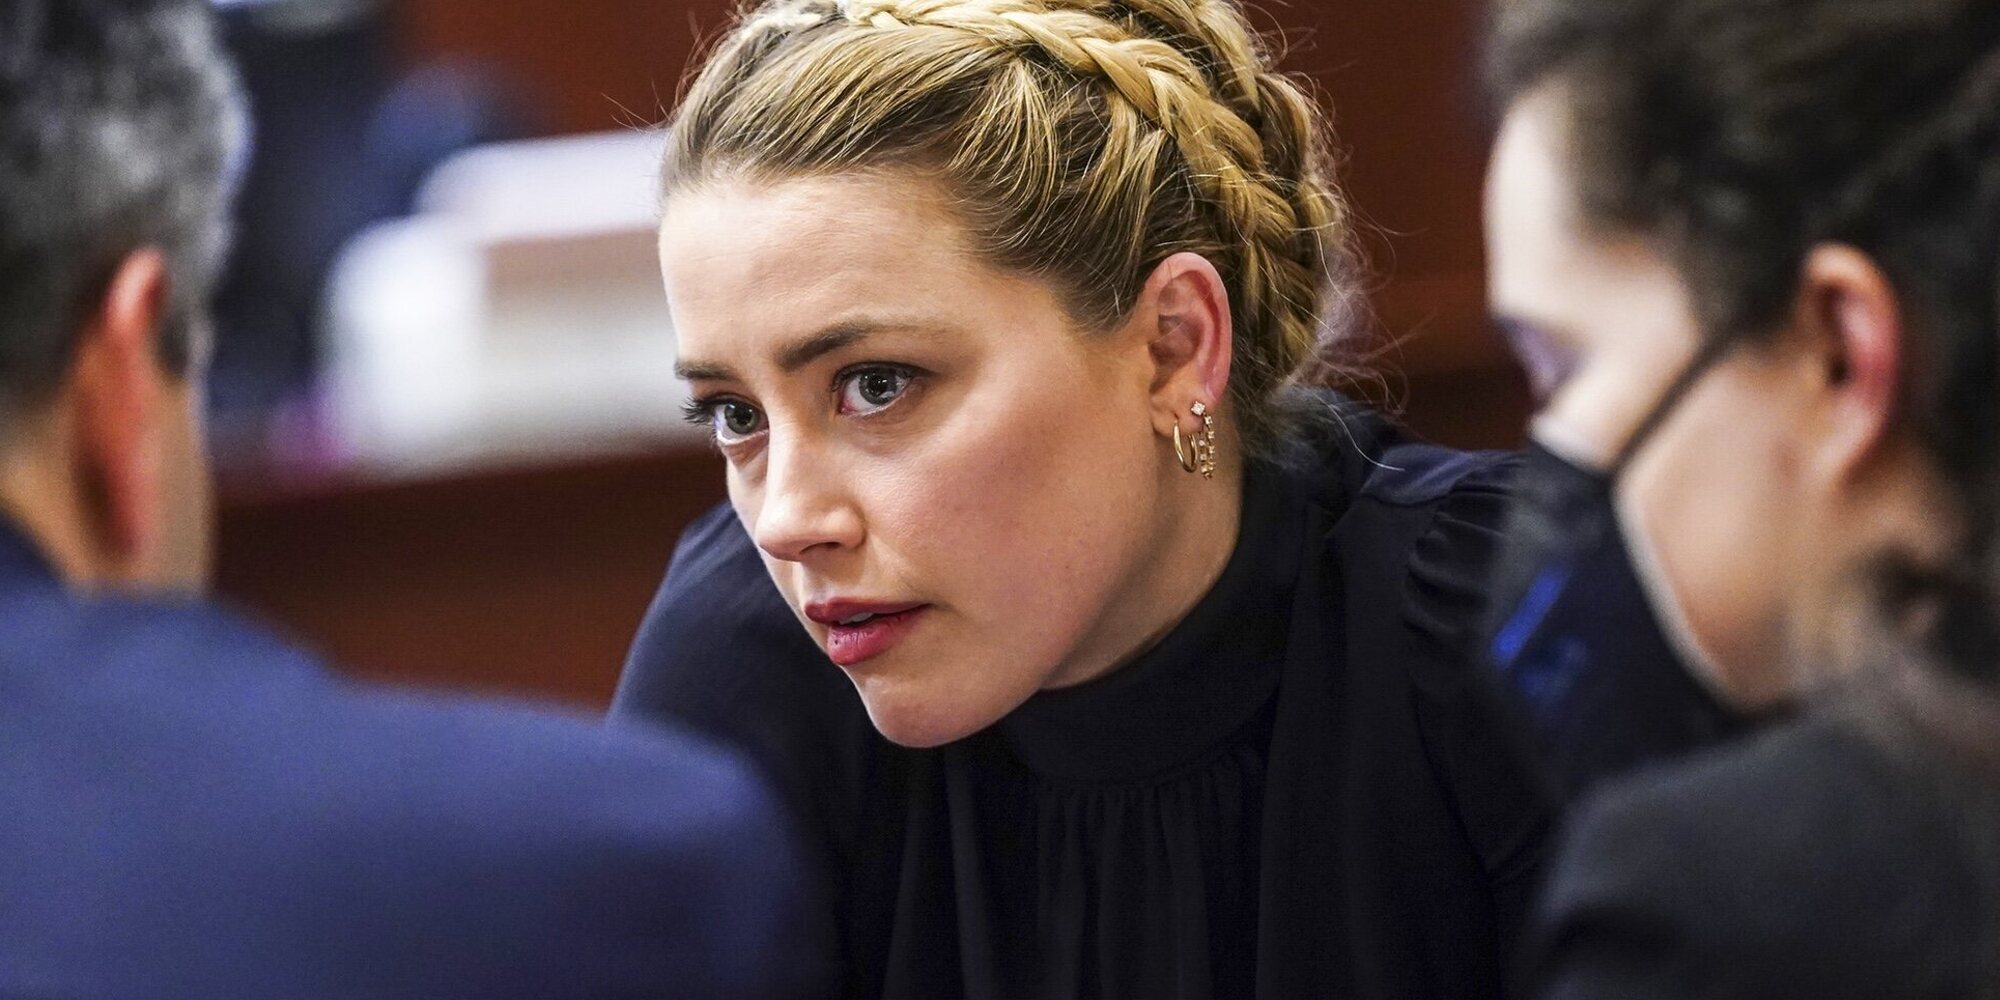 Primeras palabras de la hermana de Amber Heard tras perder el juicio contra Johnny Depp: "Sé lo que vi"